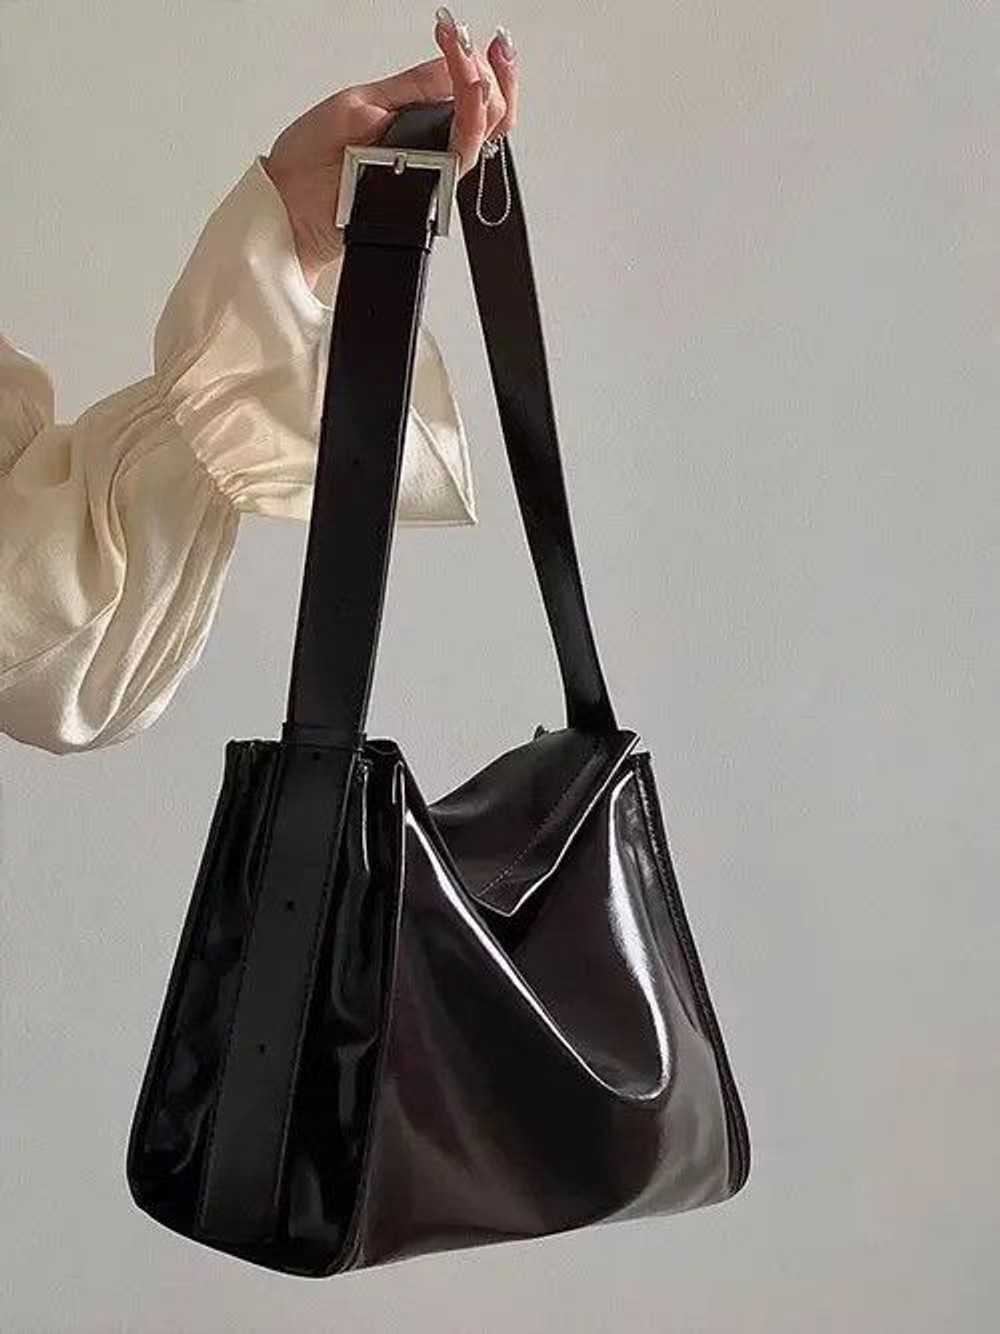 Bag × Japanese Brand Brown shoulder bag - image 7